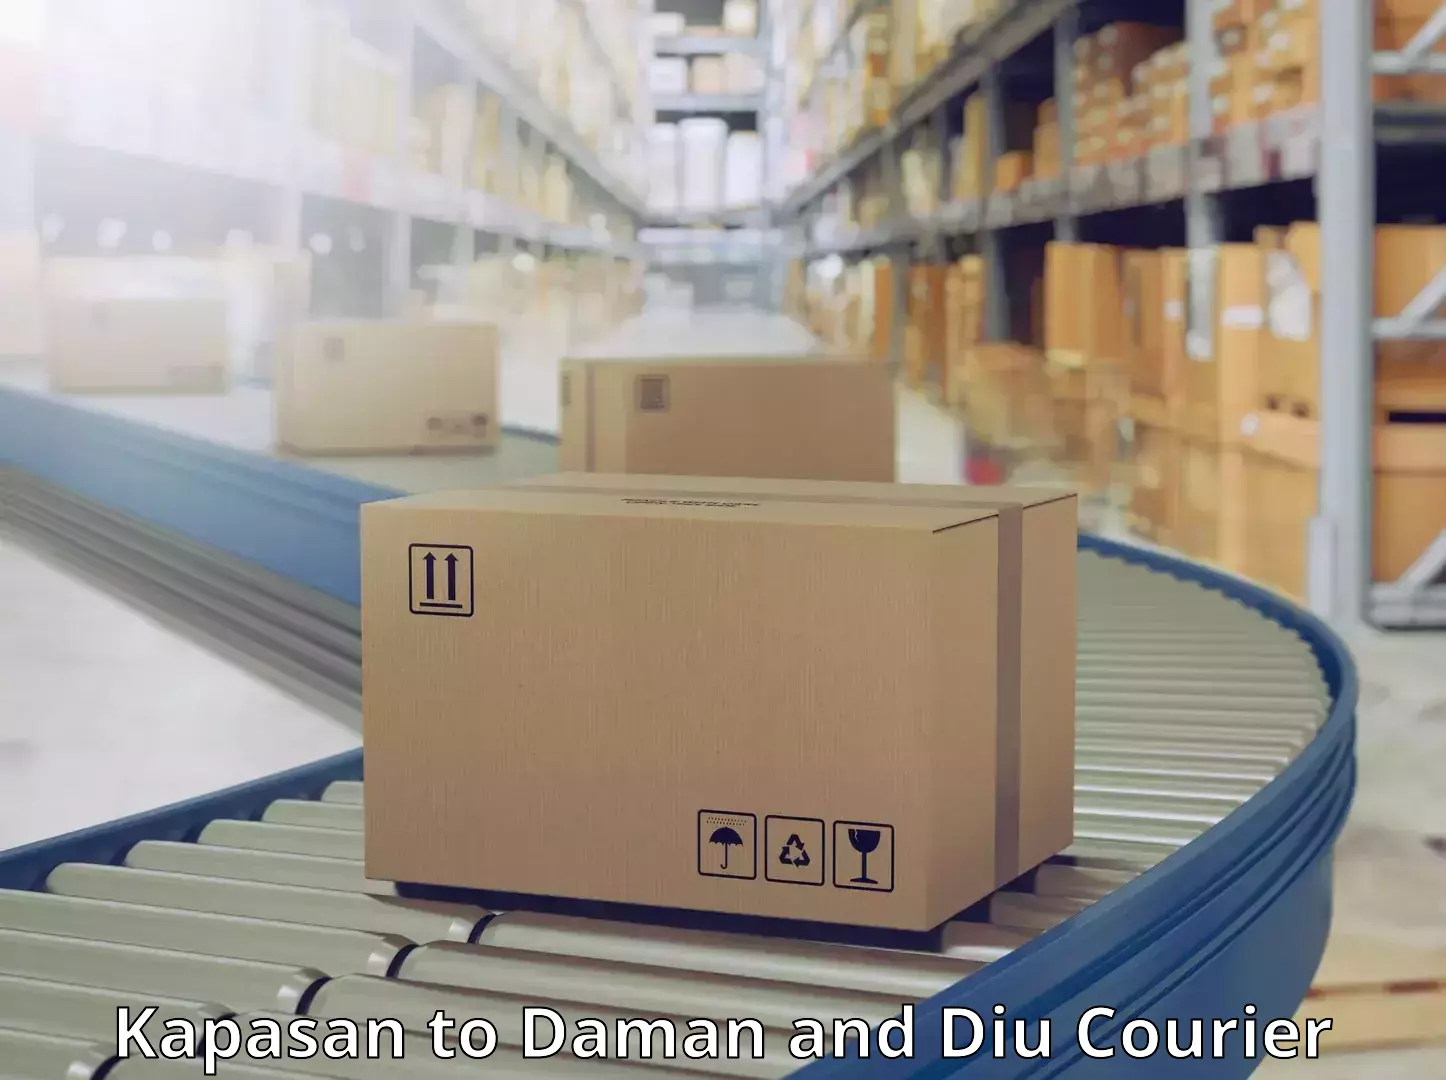 Courier service comparison Kapasan to Daman